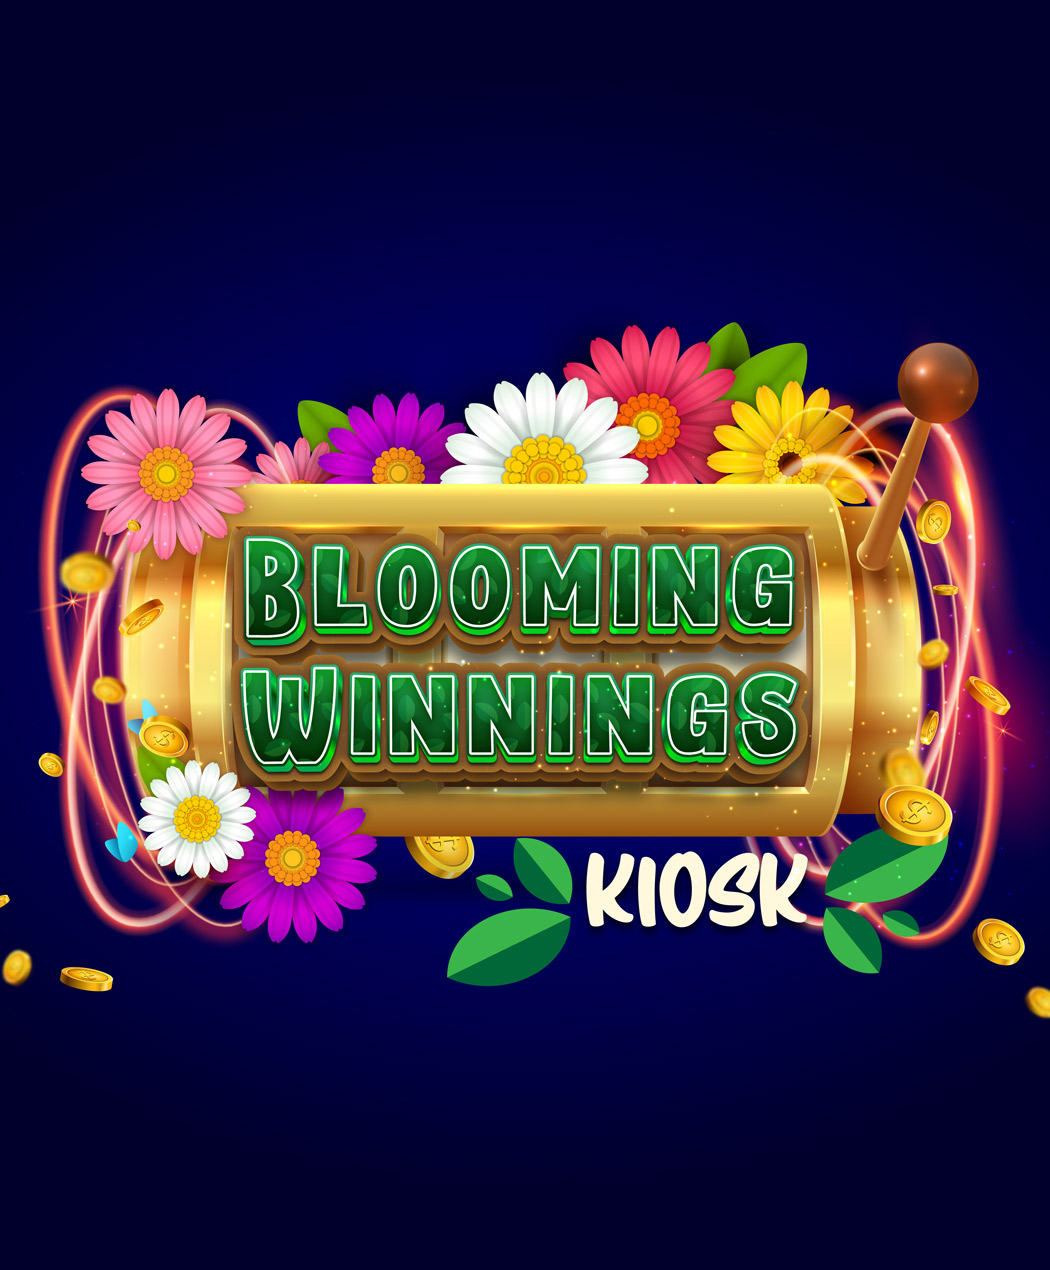 Blooming Winnings Kiosk